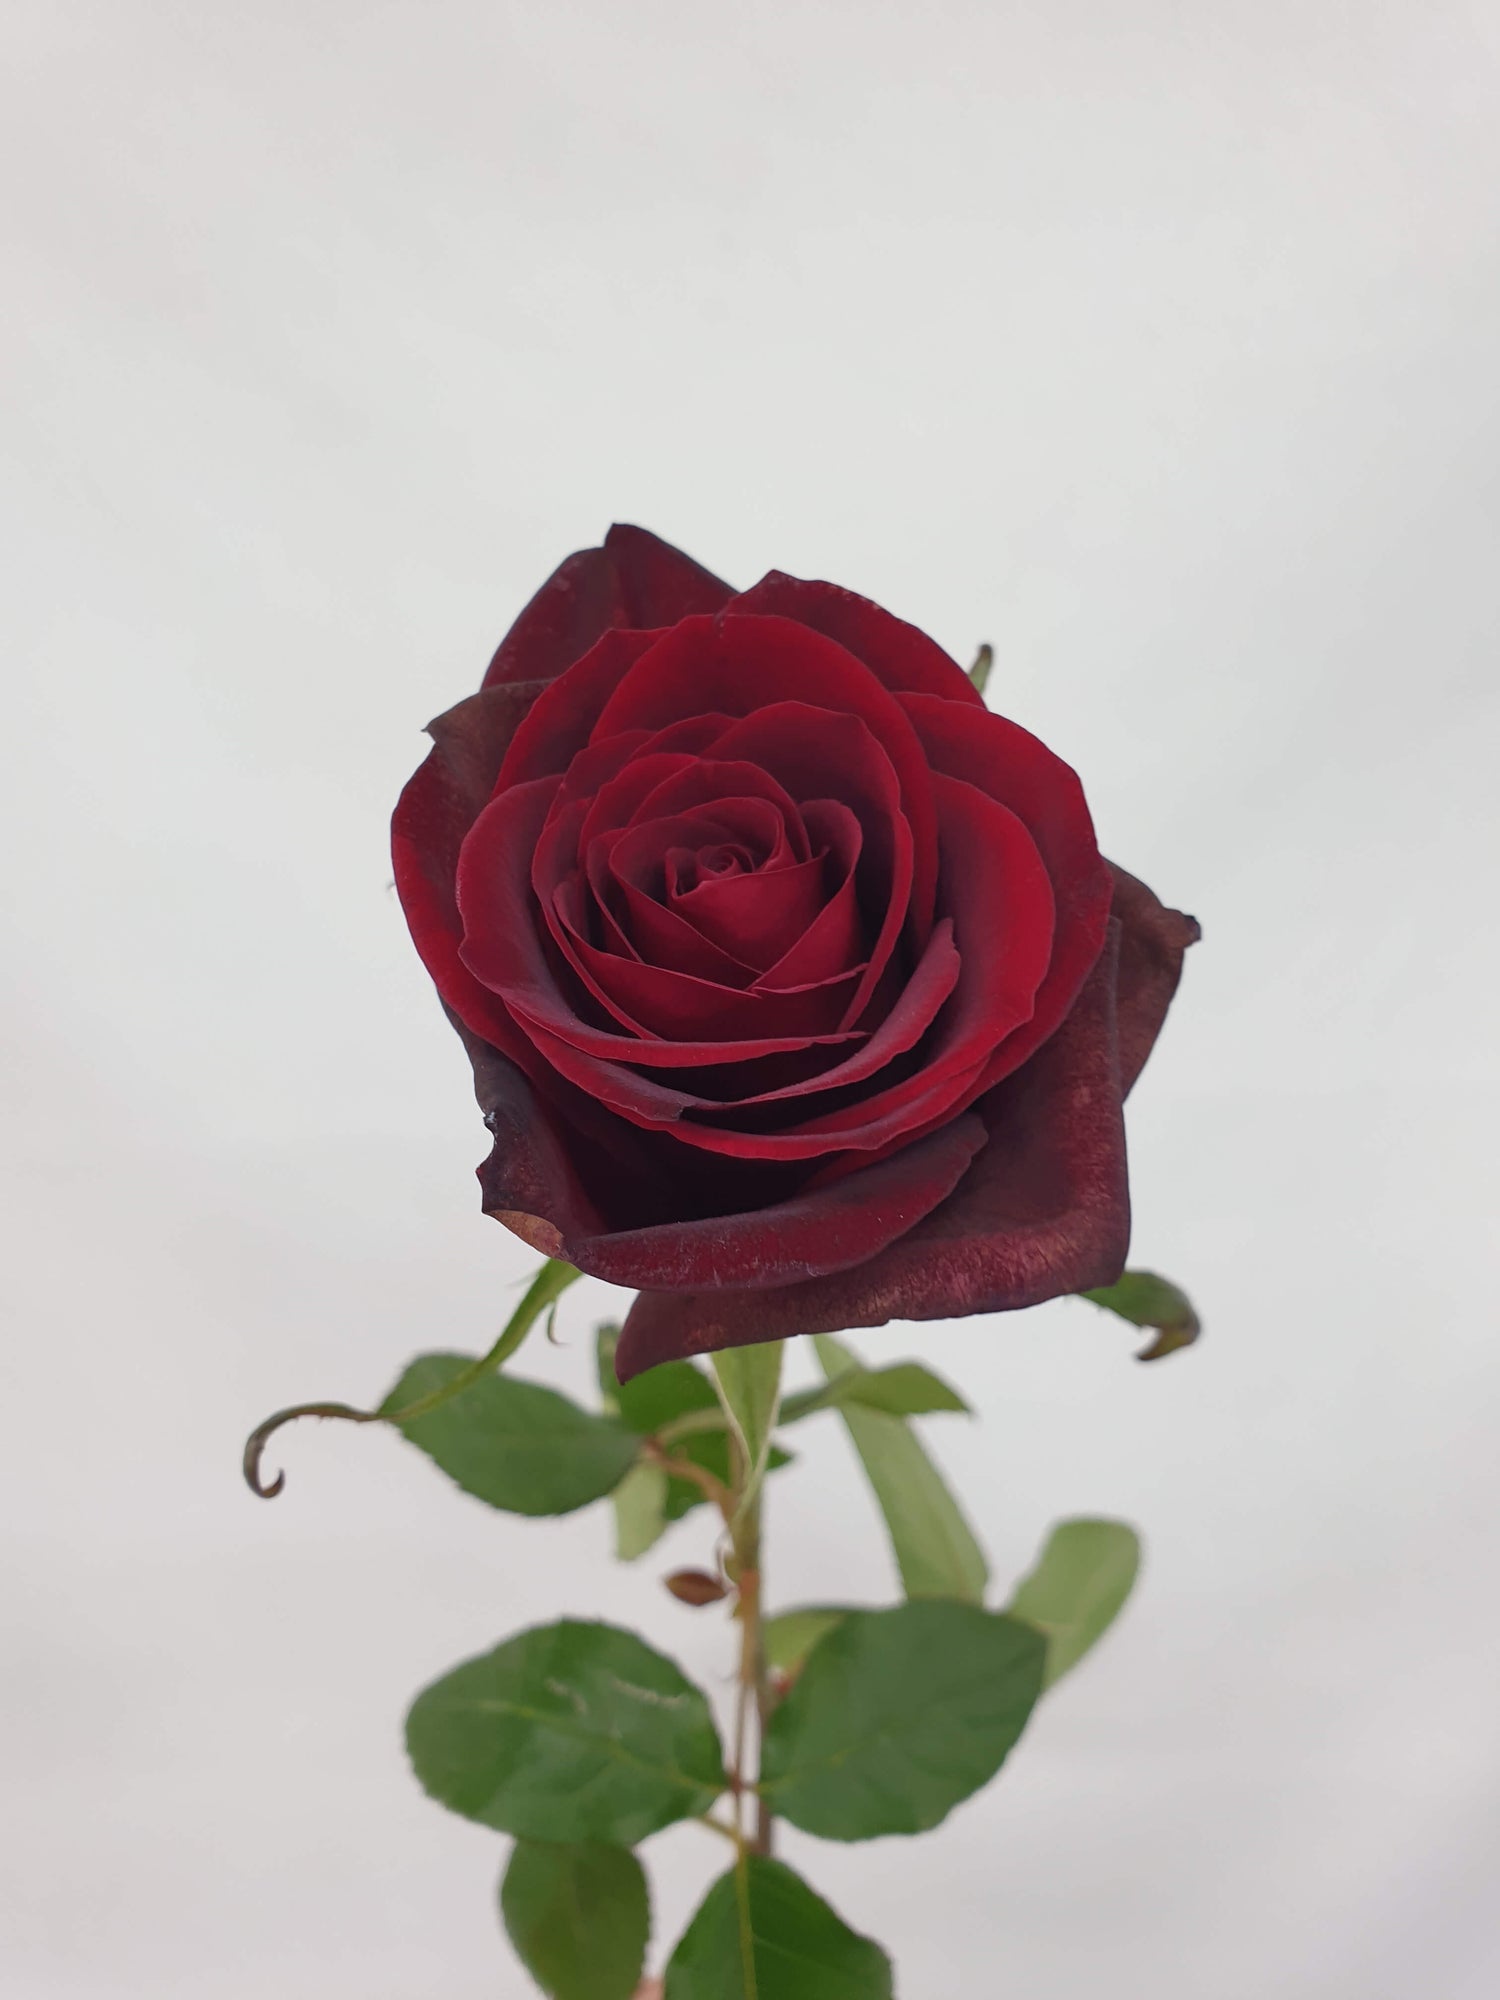 Black magic rose for romance